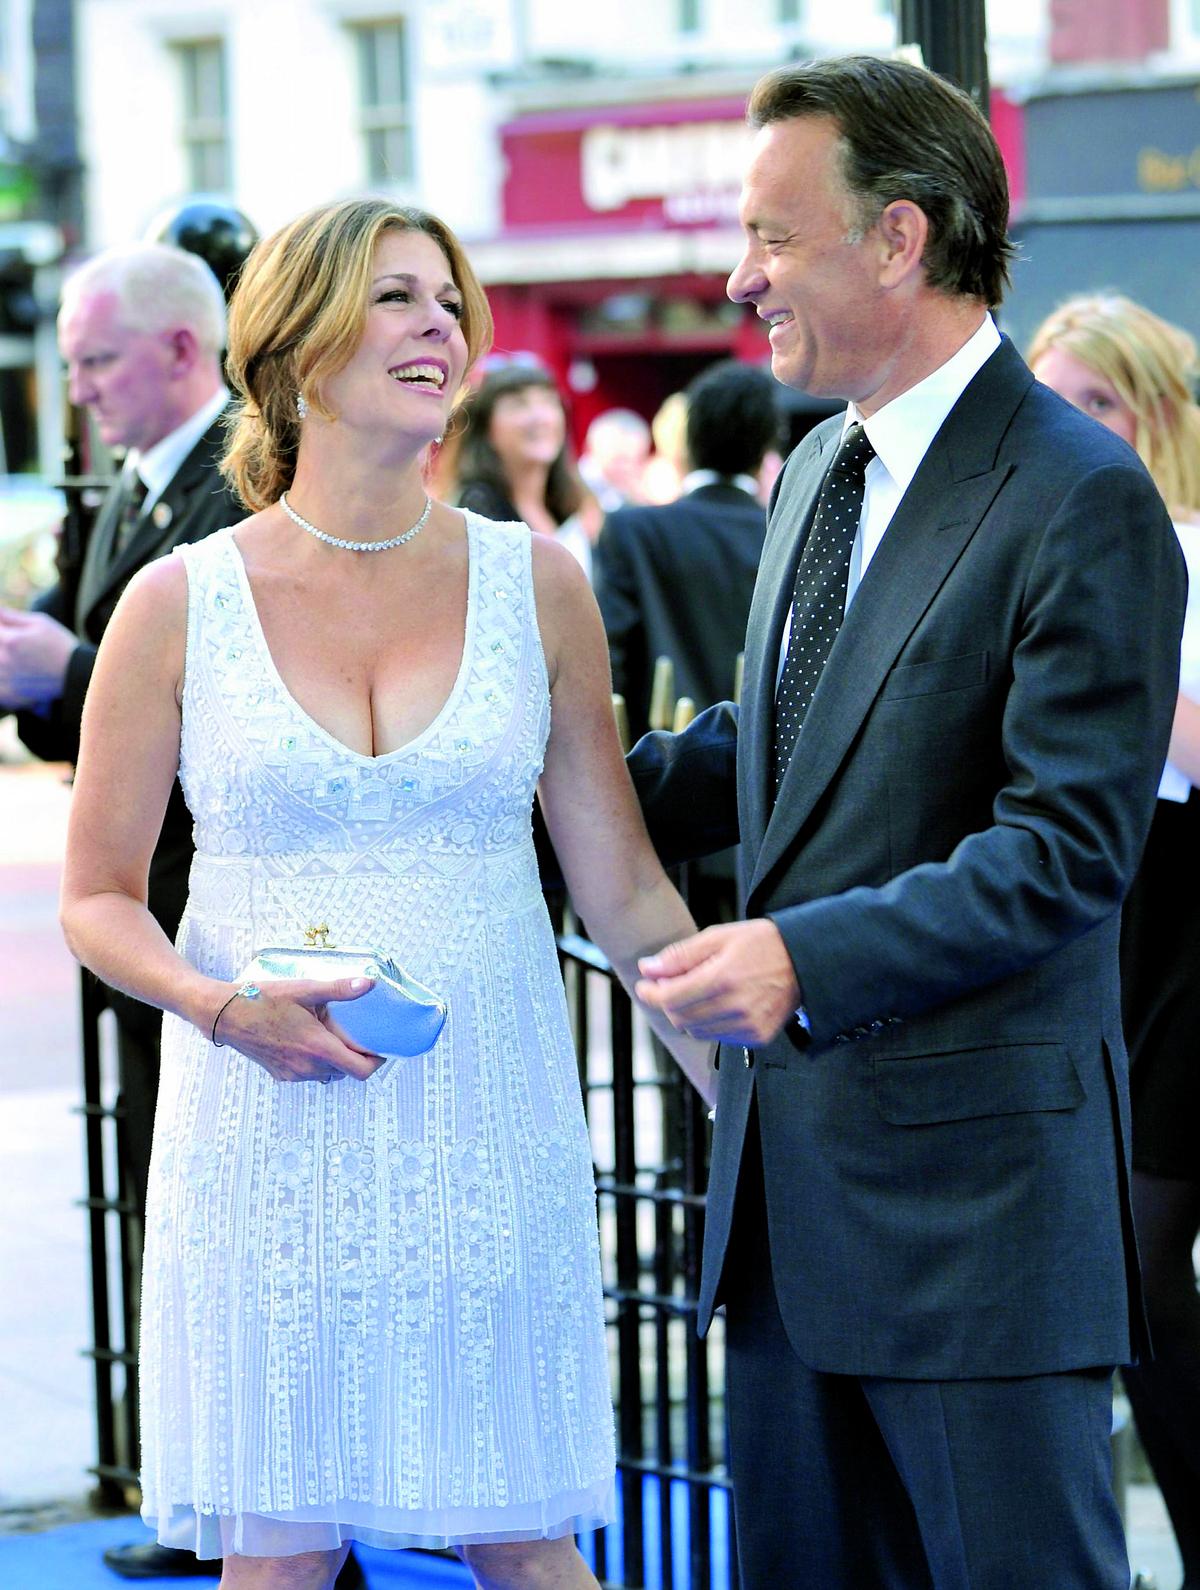 Ett av Hollywoods äldsta radarpar - Tom Hanks och Rita Wilson. De har lyckats kombinera karriär och kärlek och har nu varit gifta i tjugo år.